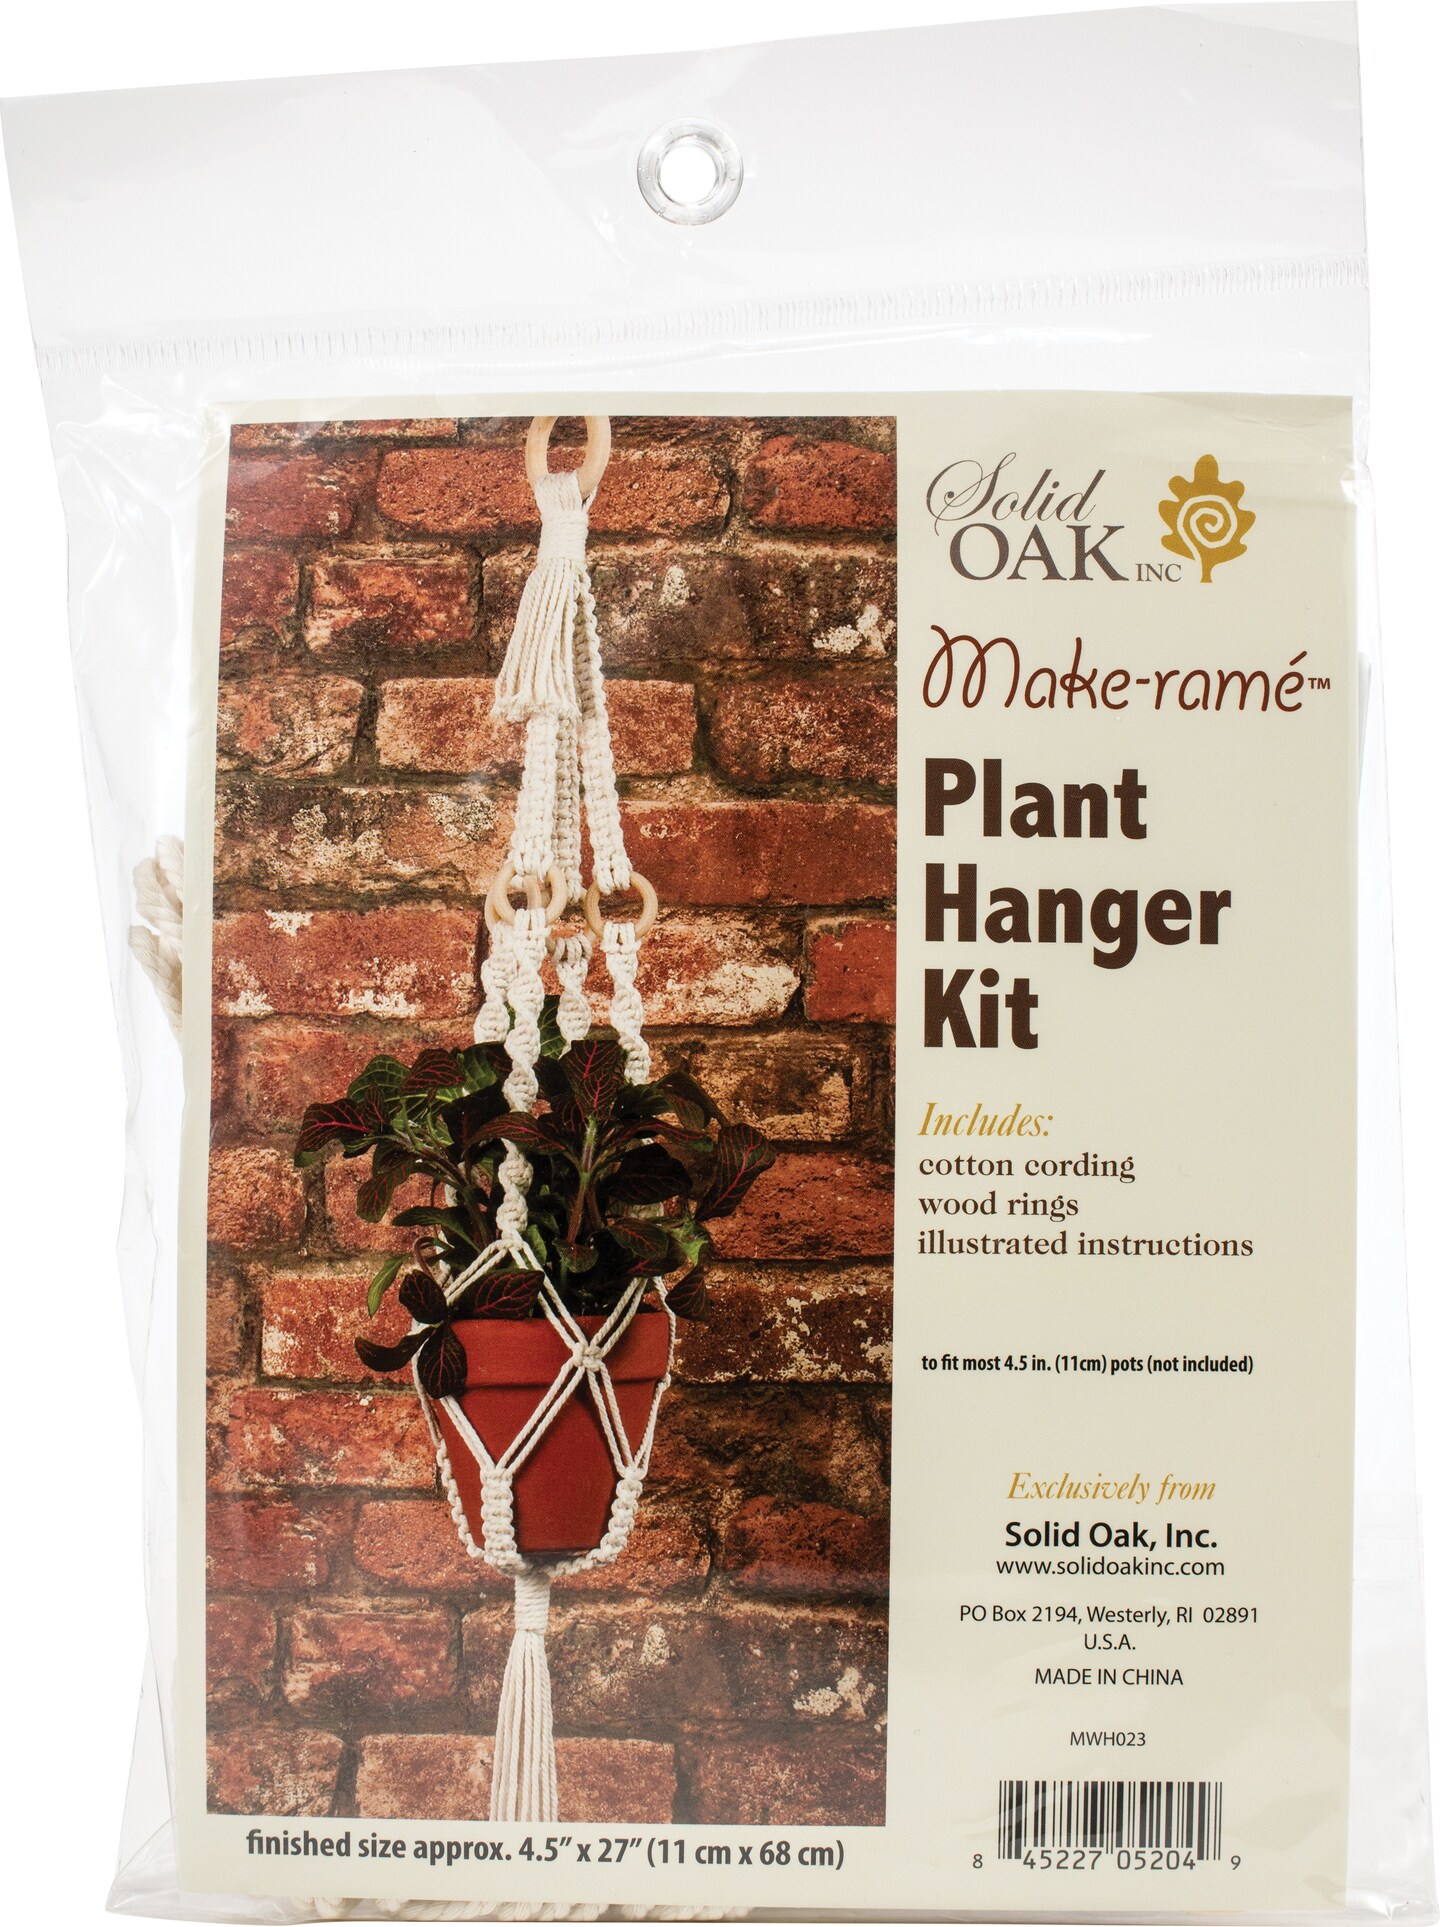 Macrame Plant Hanger Kit